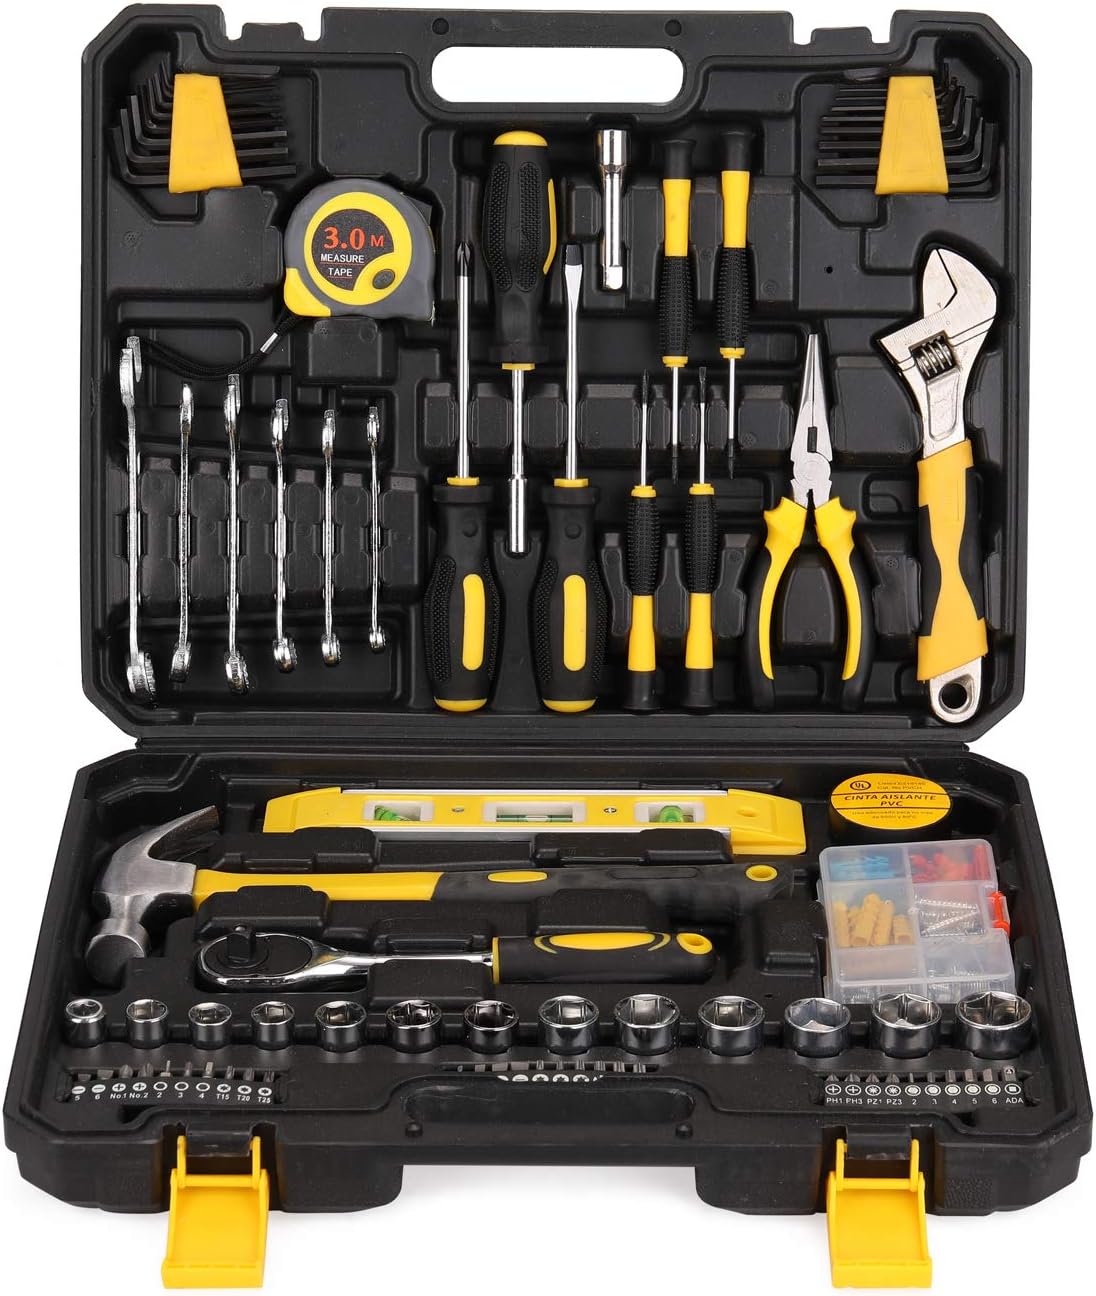 Kit de ferramentas como presente útil para homens